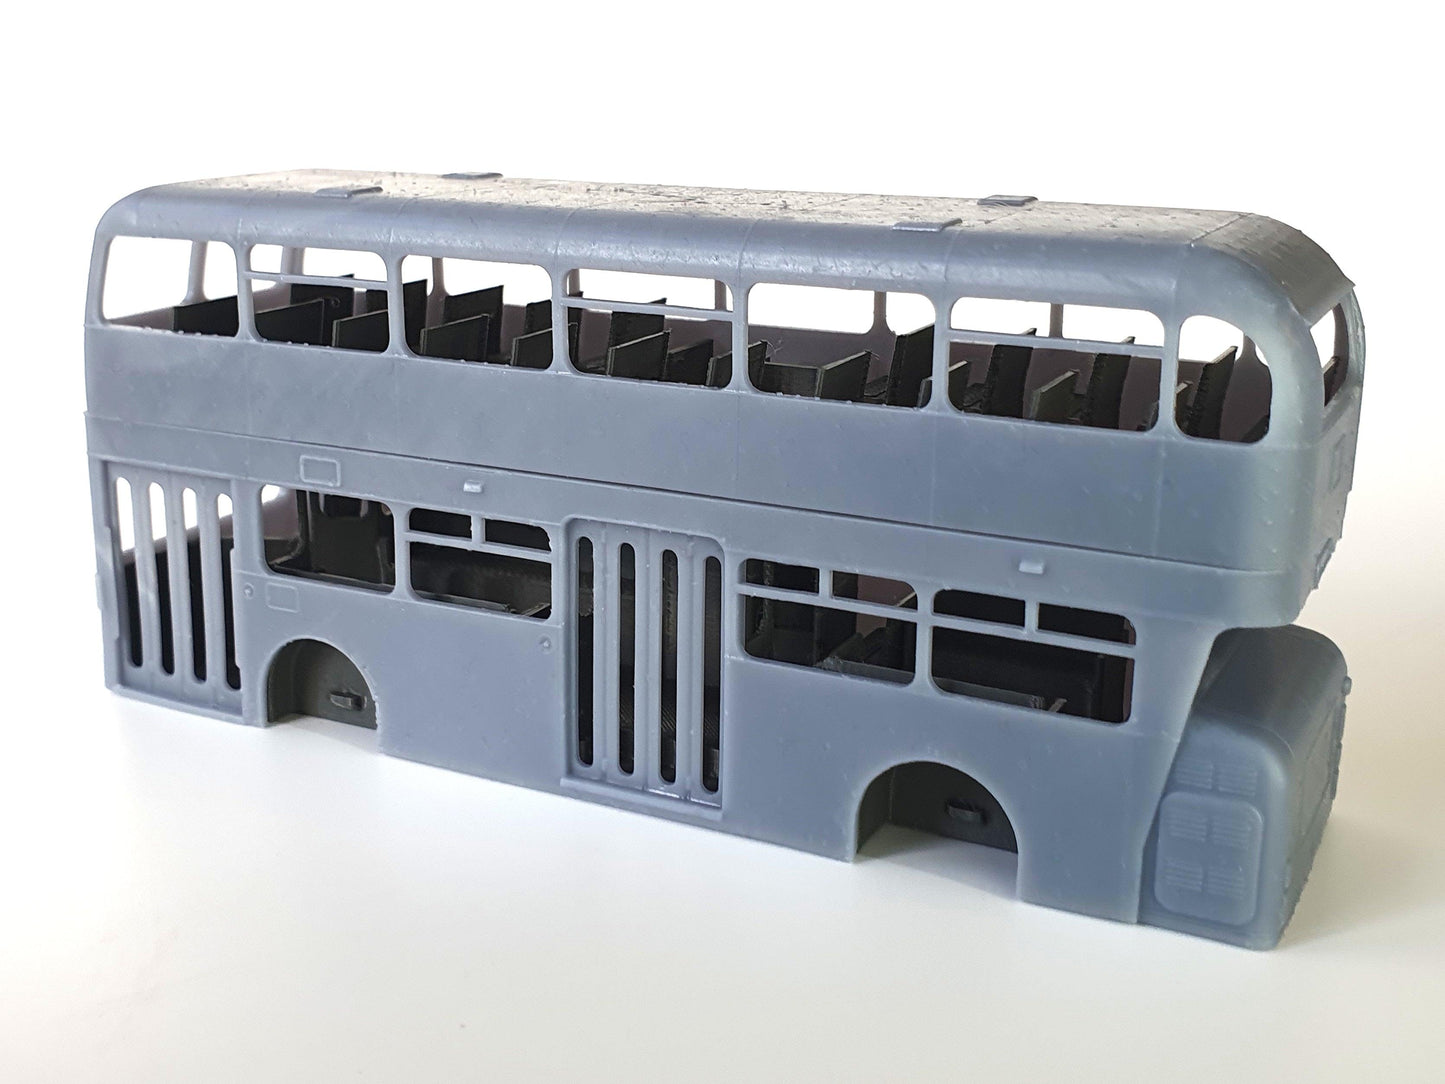 Side view of OO gauge scale model of a Coventry Daimler Fleetline bus - Three Peaks Models